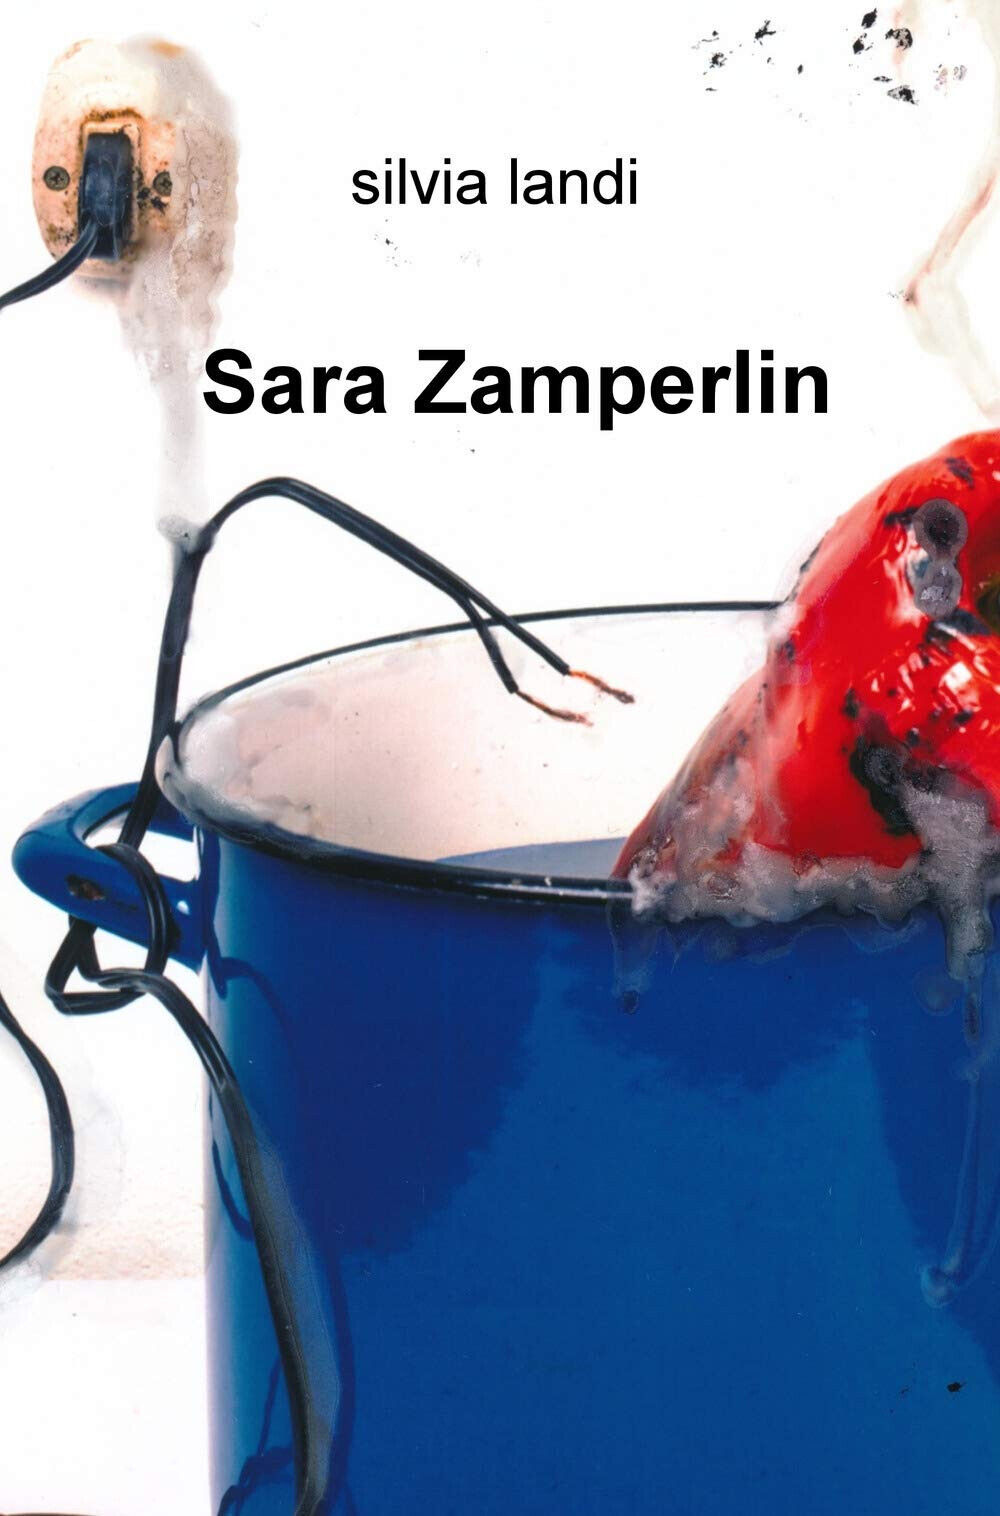 Sara Zamperlin - Silvia Landi - ilmiolibro, 2019 libro usato